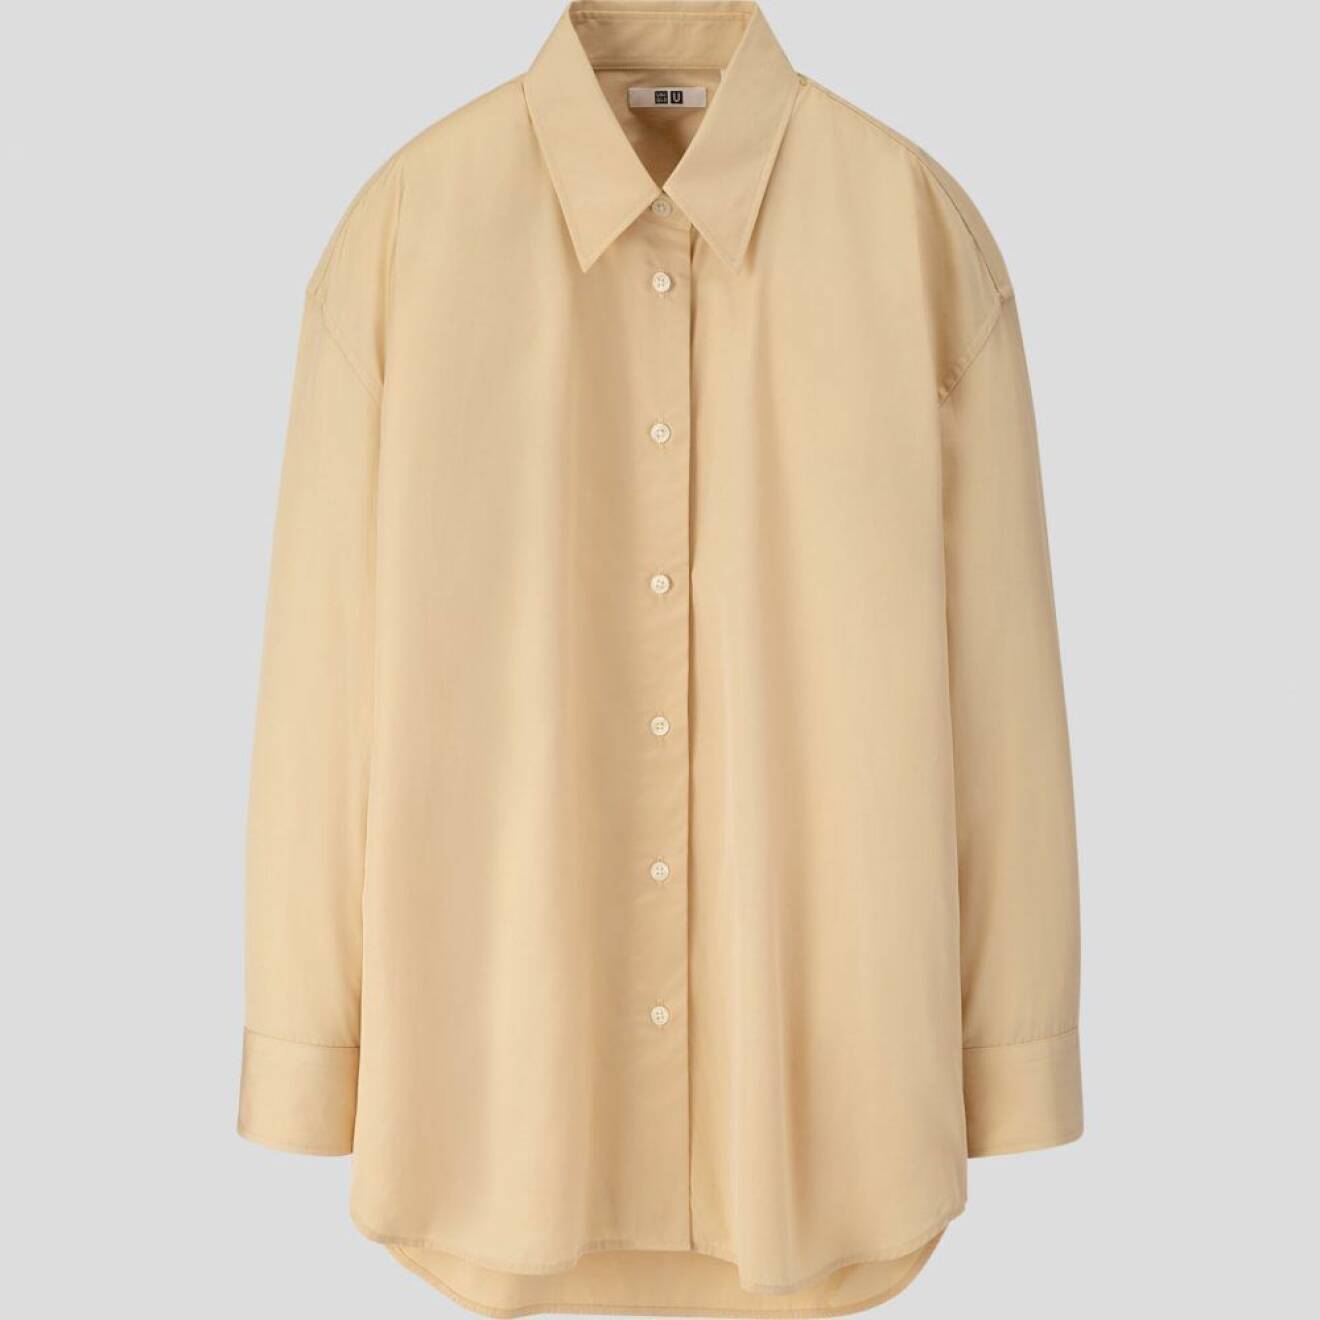 Uniqlo U höstkollektion 2019, beigegul skjorta